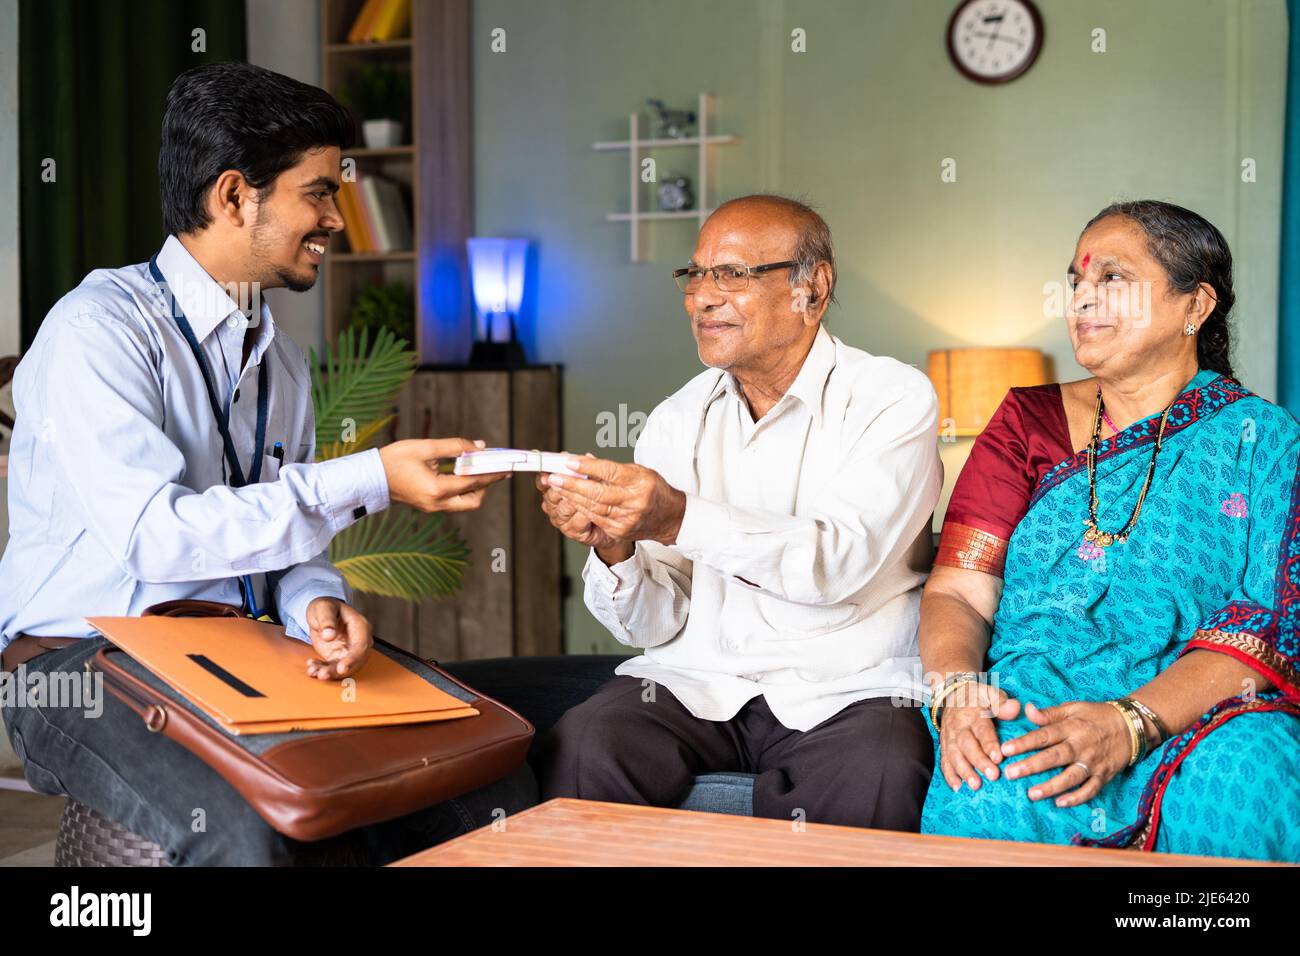 Glückliches lächelndes Senior-Paar, das von einem Bankbeamten oder Versicherer zu Hause Geld erhält – Konzept des Versicherungsanspruchs und der Unterstützung von Home Banking Stockfoto